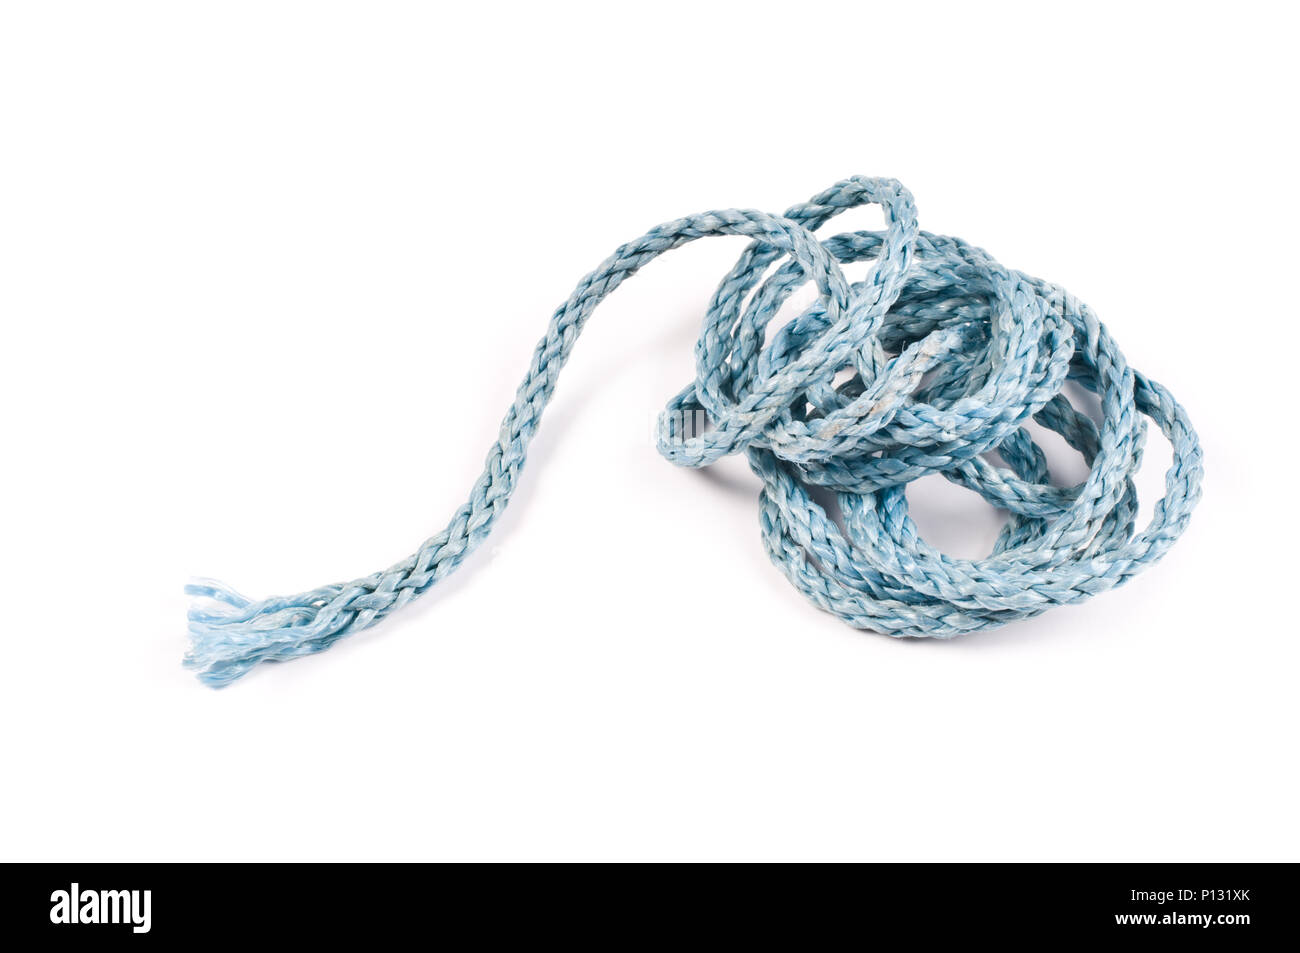 Entangled nylon rope on white background. Stock Photo